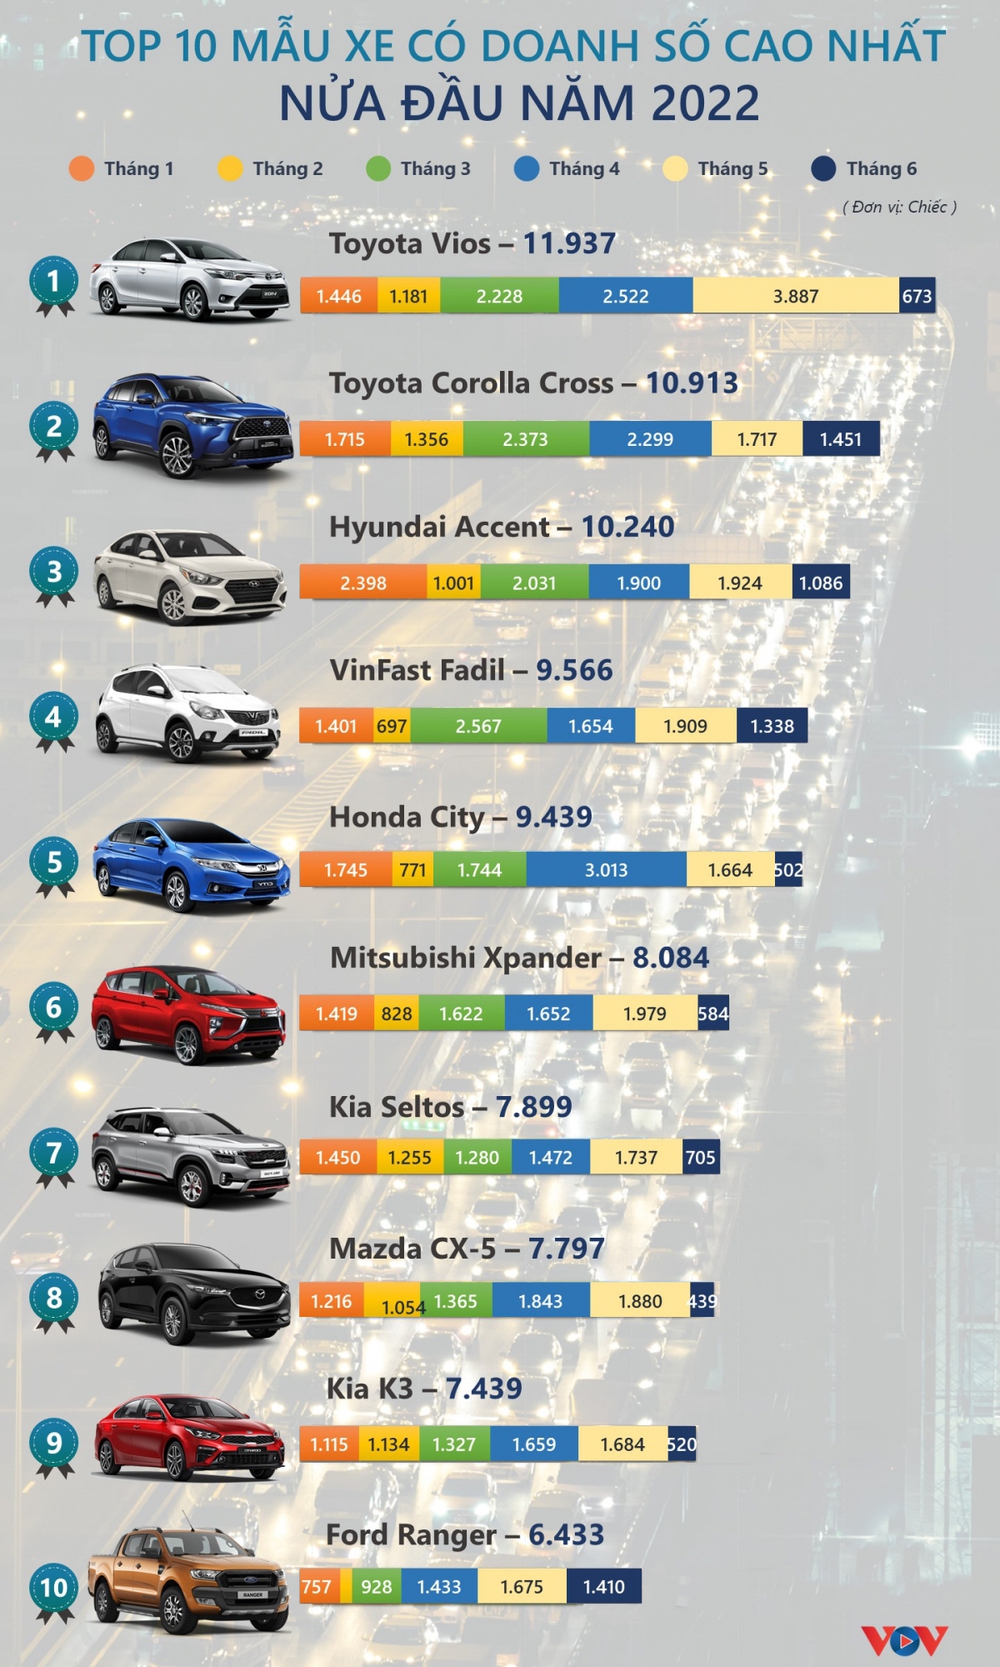 Mẫu xe nào đang bán được nhiều nhất tại Việt Nam nửa đầu năm 2022? - Ảnh 1.